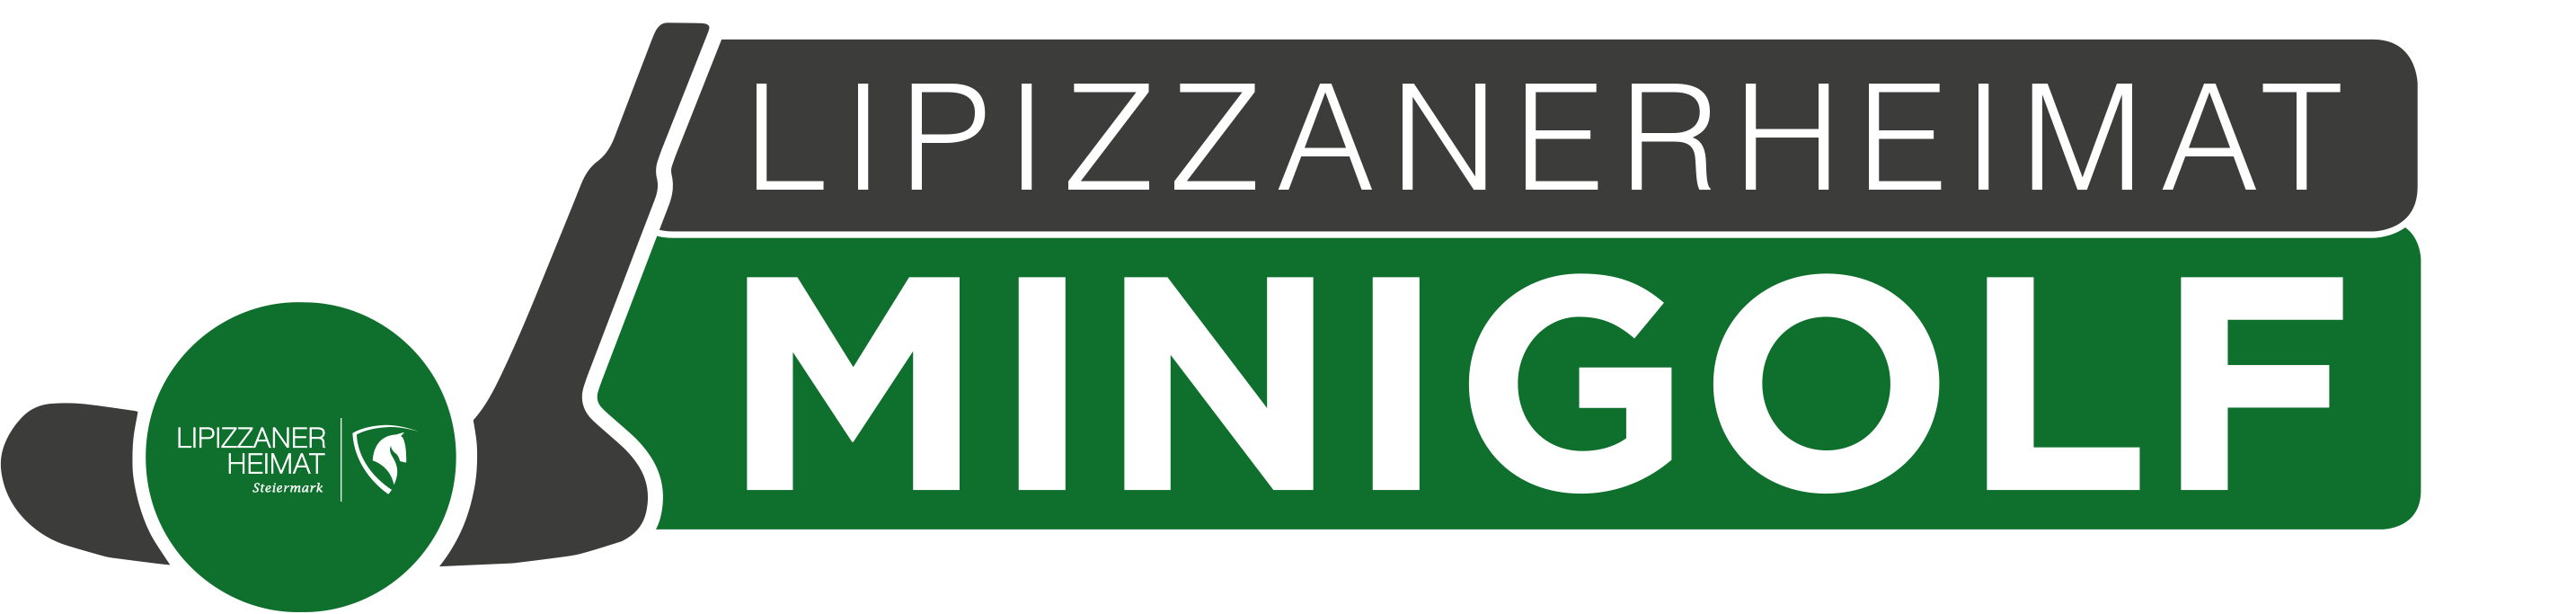 MinigolfLipizzaner_Logo